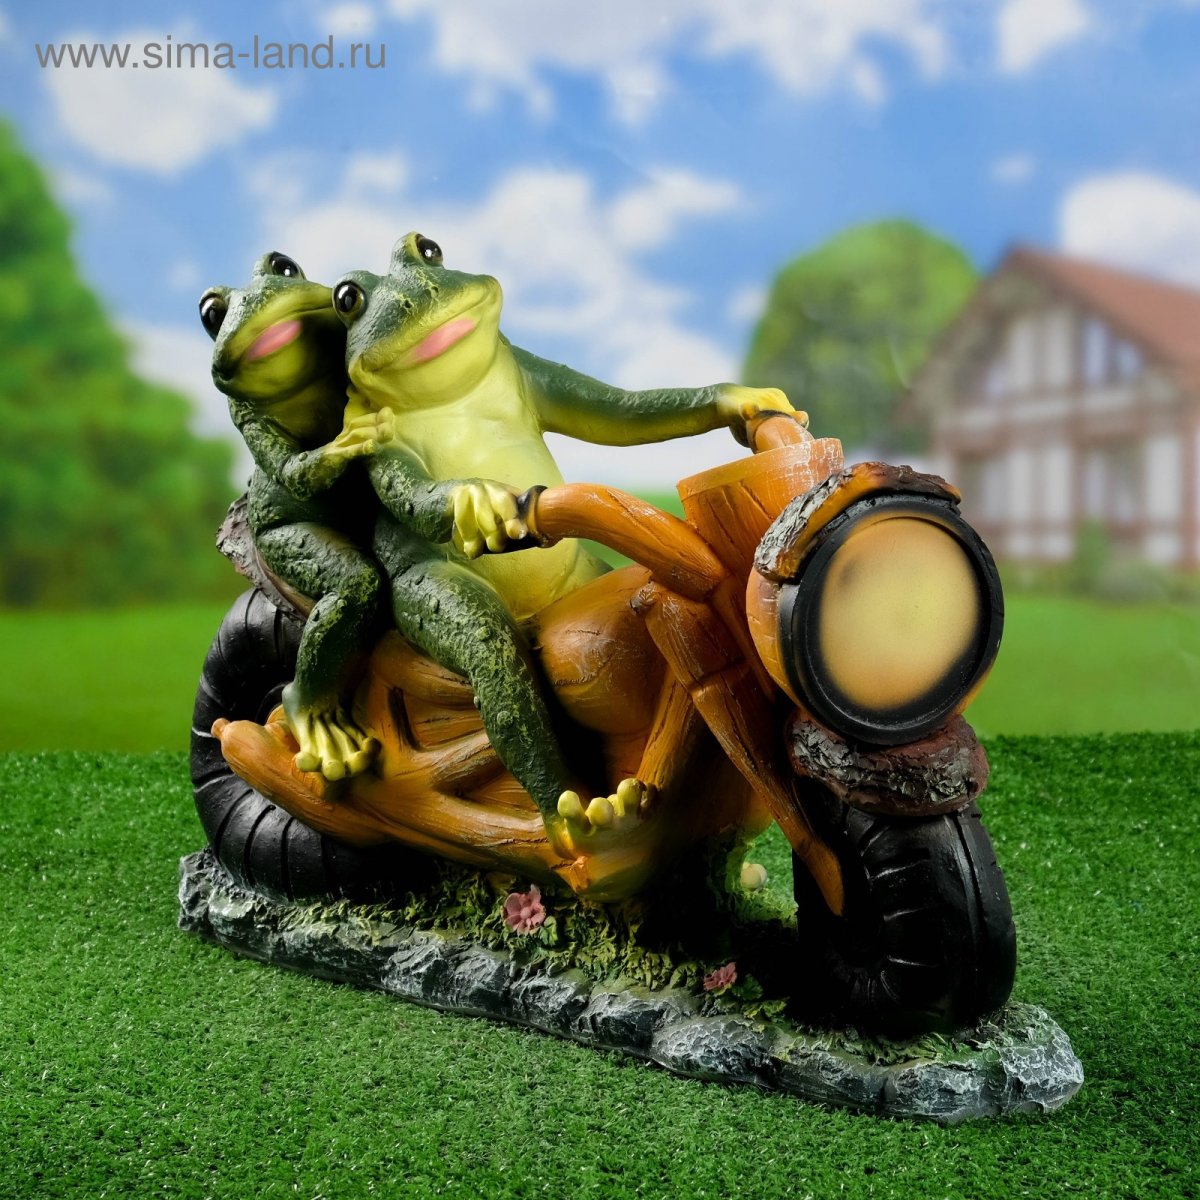 Лягушка на мотоцикле с люлькой